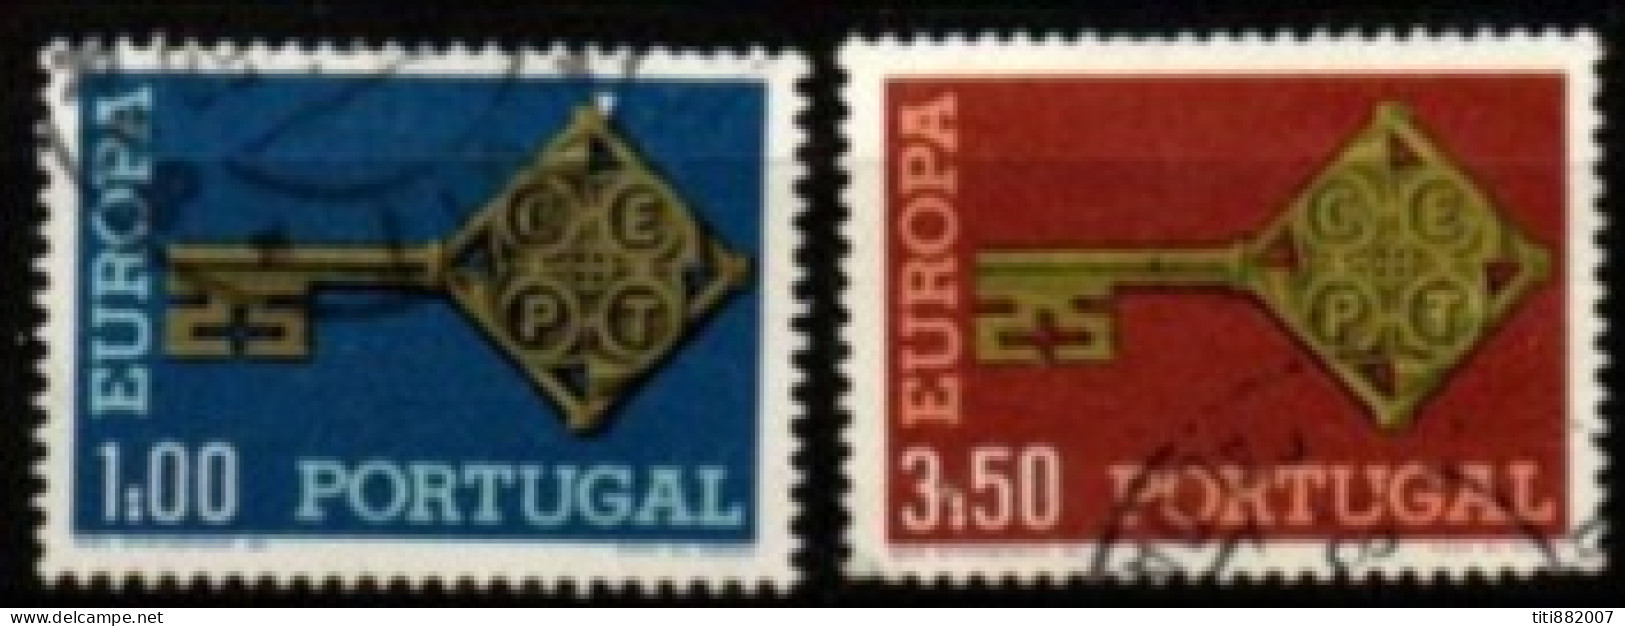 PORTUGAL     -    1968 .  Y&T N° 1032 / 1033 Oblitérés.    EUROPA - Oblitérés